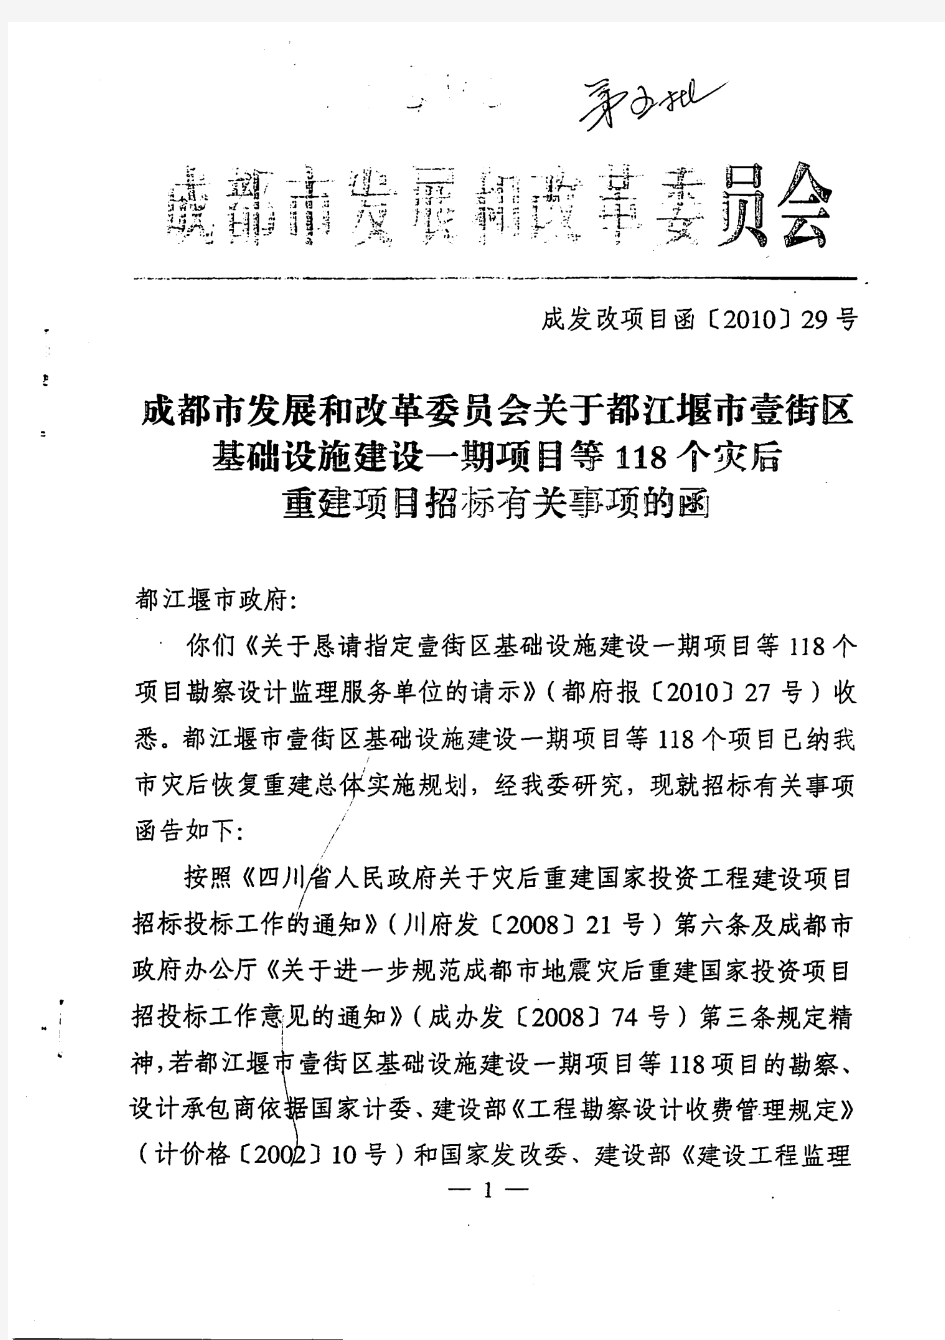 都江堰市灾后重建项目招标有关事项的函5期